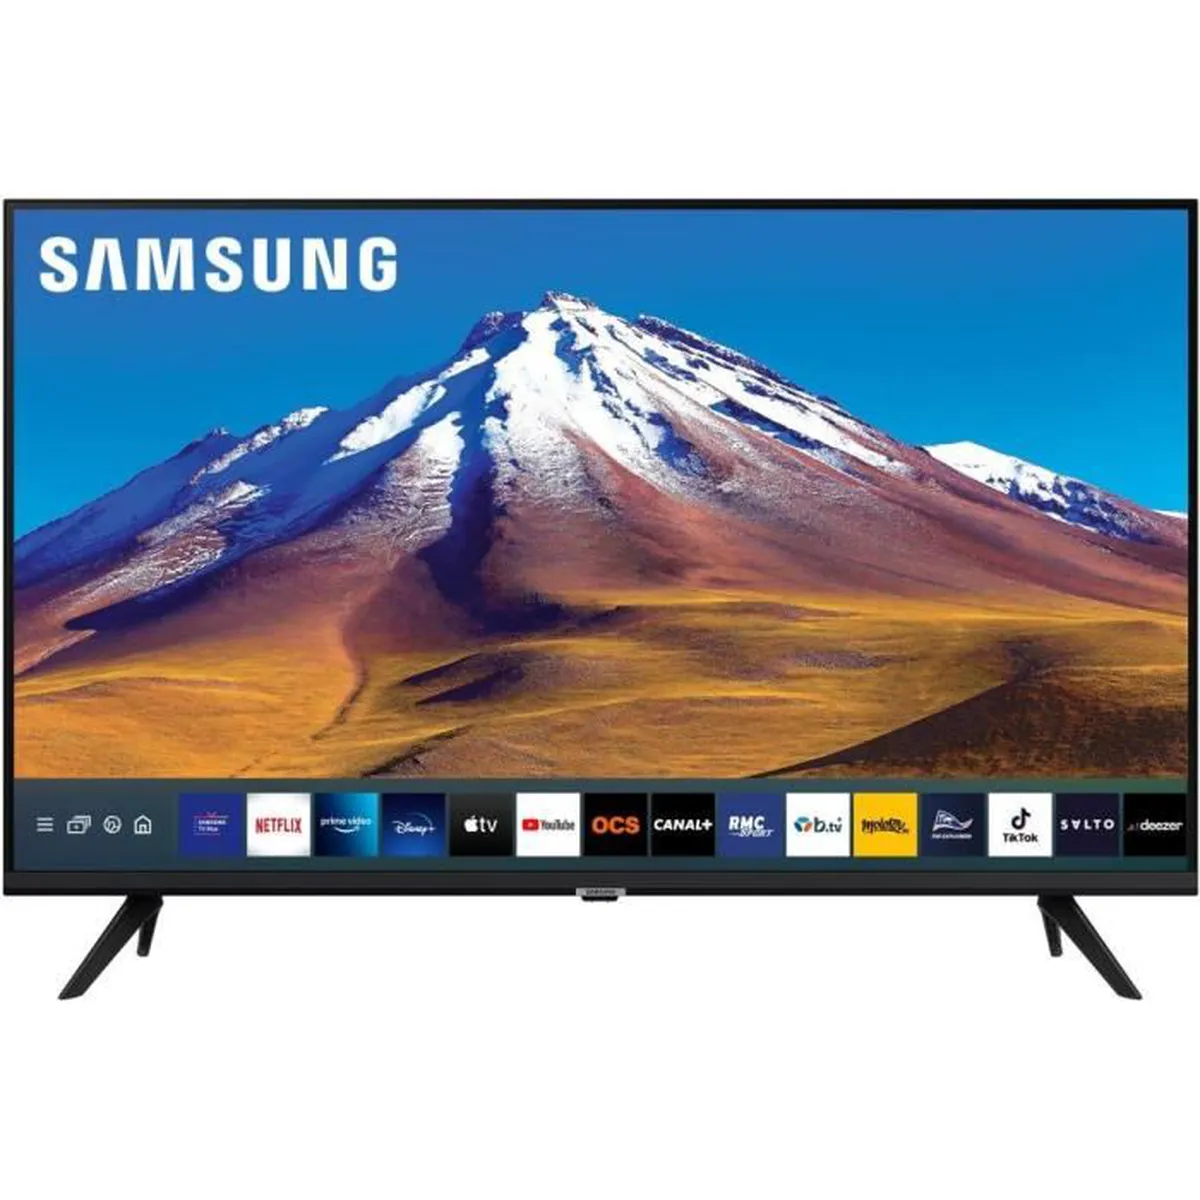 Bon plan Cdiscount : promo exclusive sur cette Smart TV 4K Samsung à bas prix !